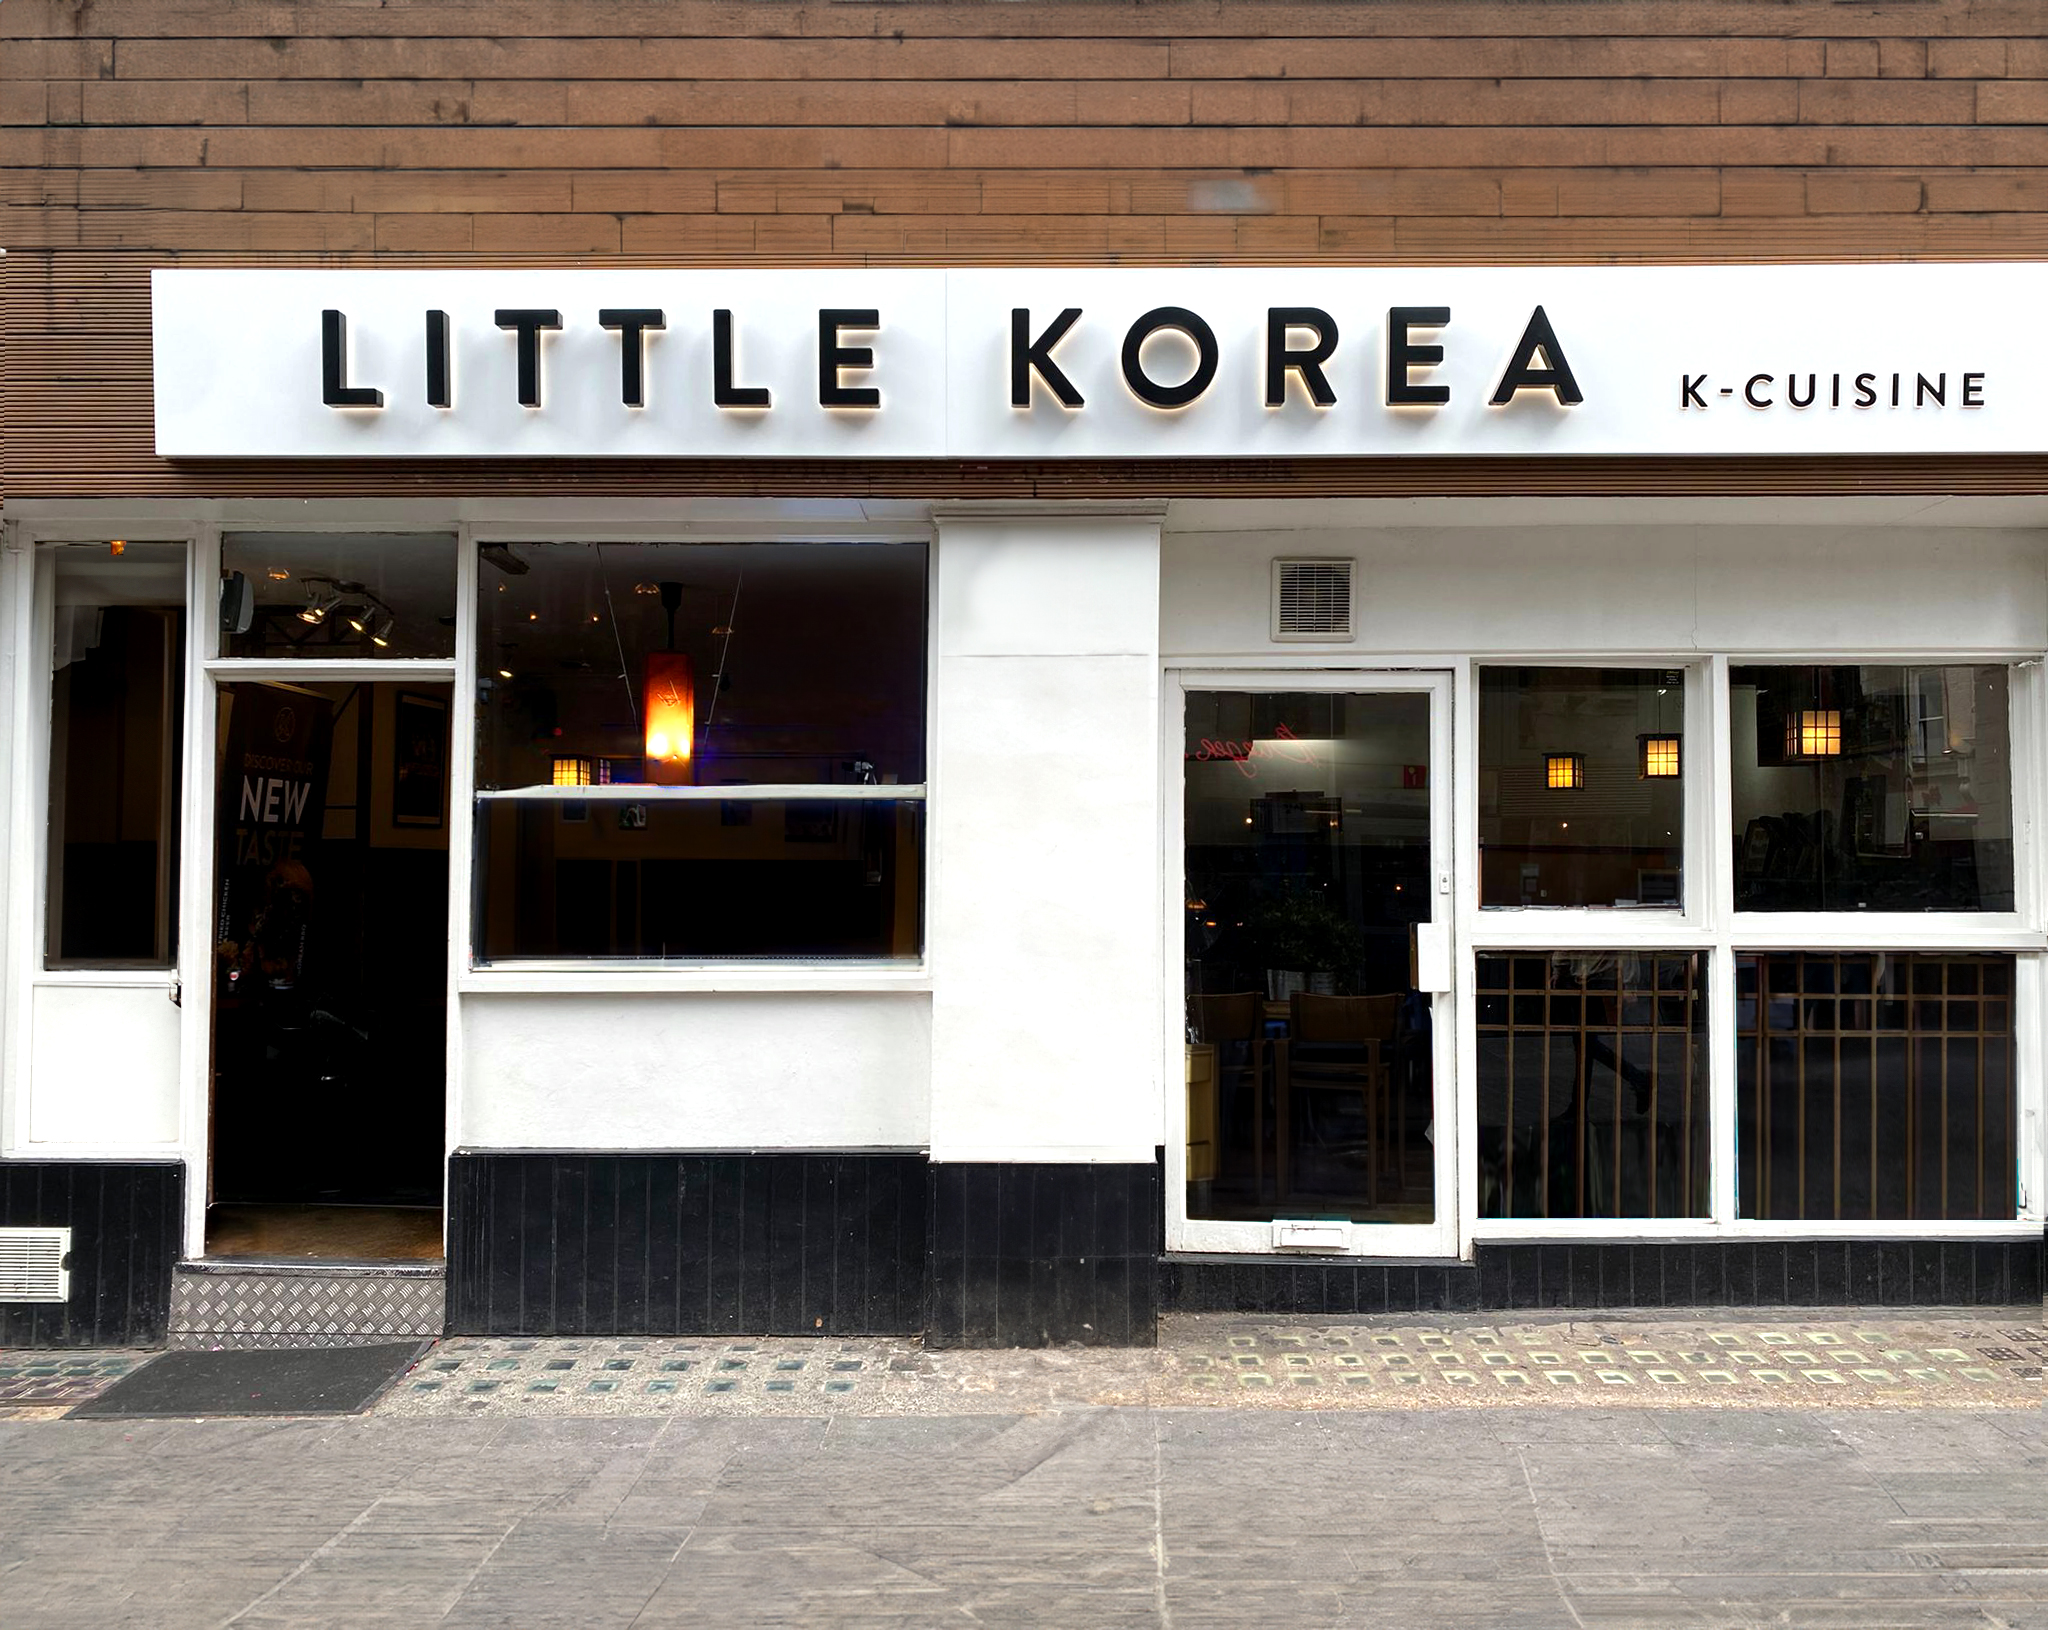 littlekorea-sign-facade